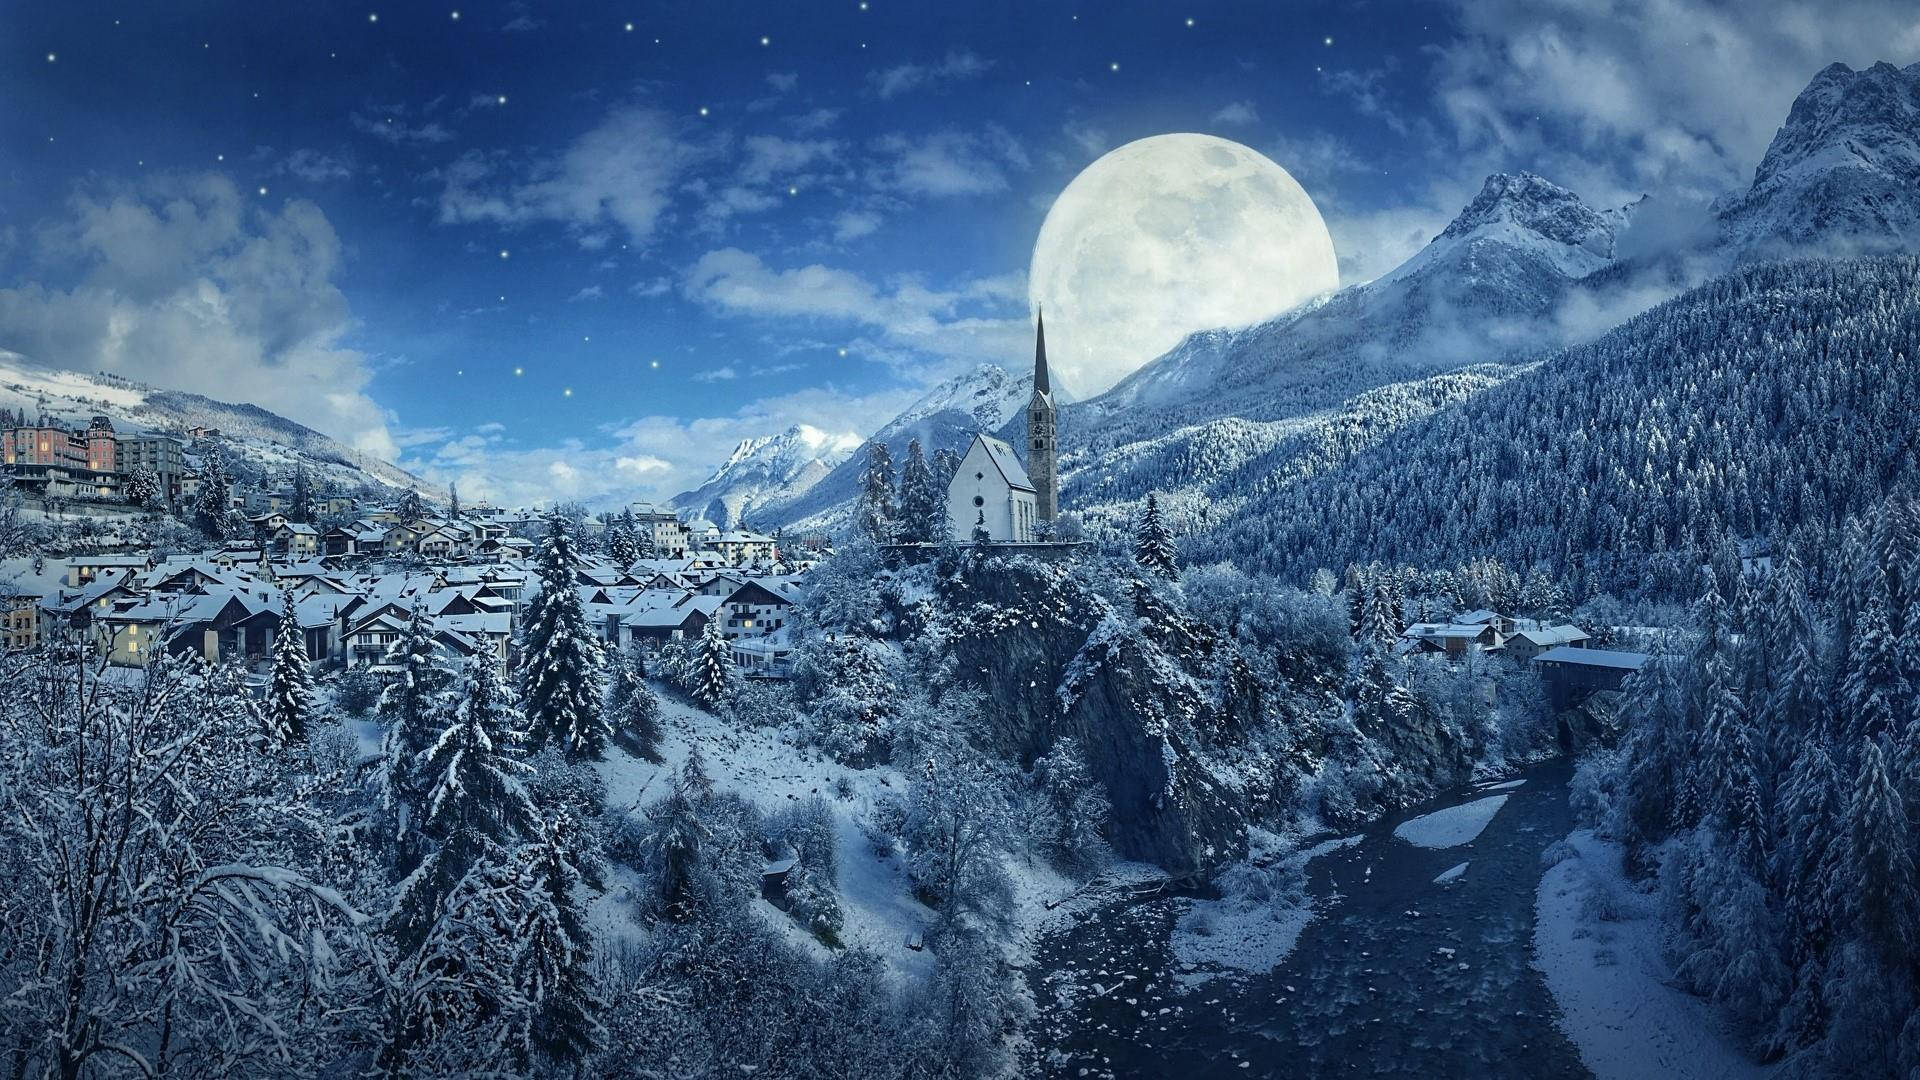 Fantasy Full Moon Winter Landscape Wallpaper